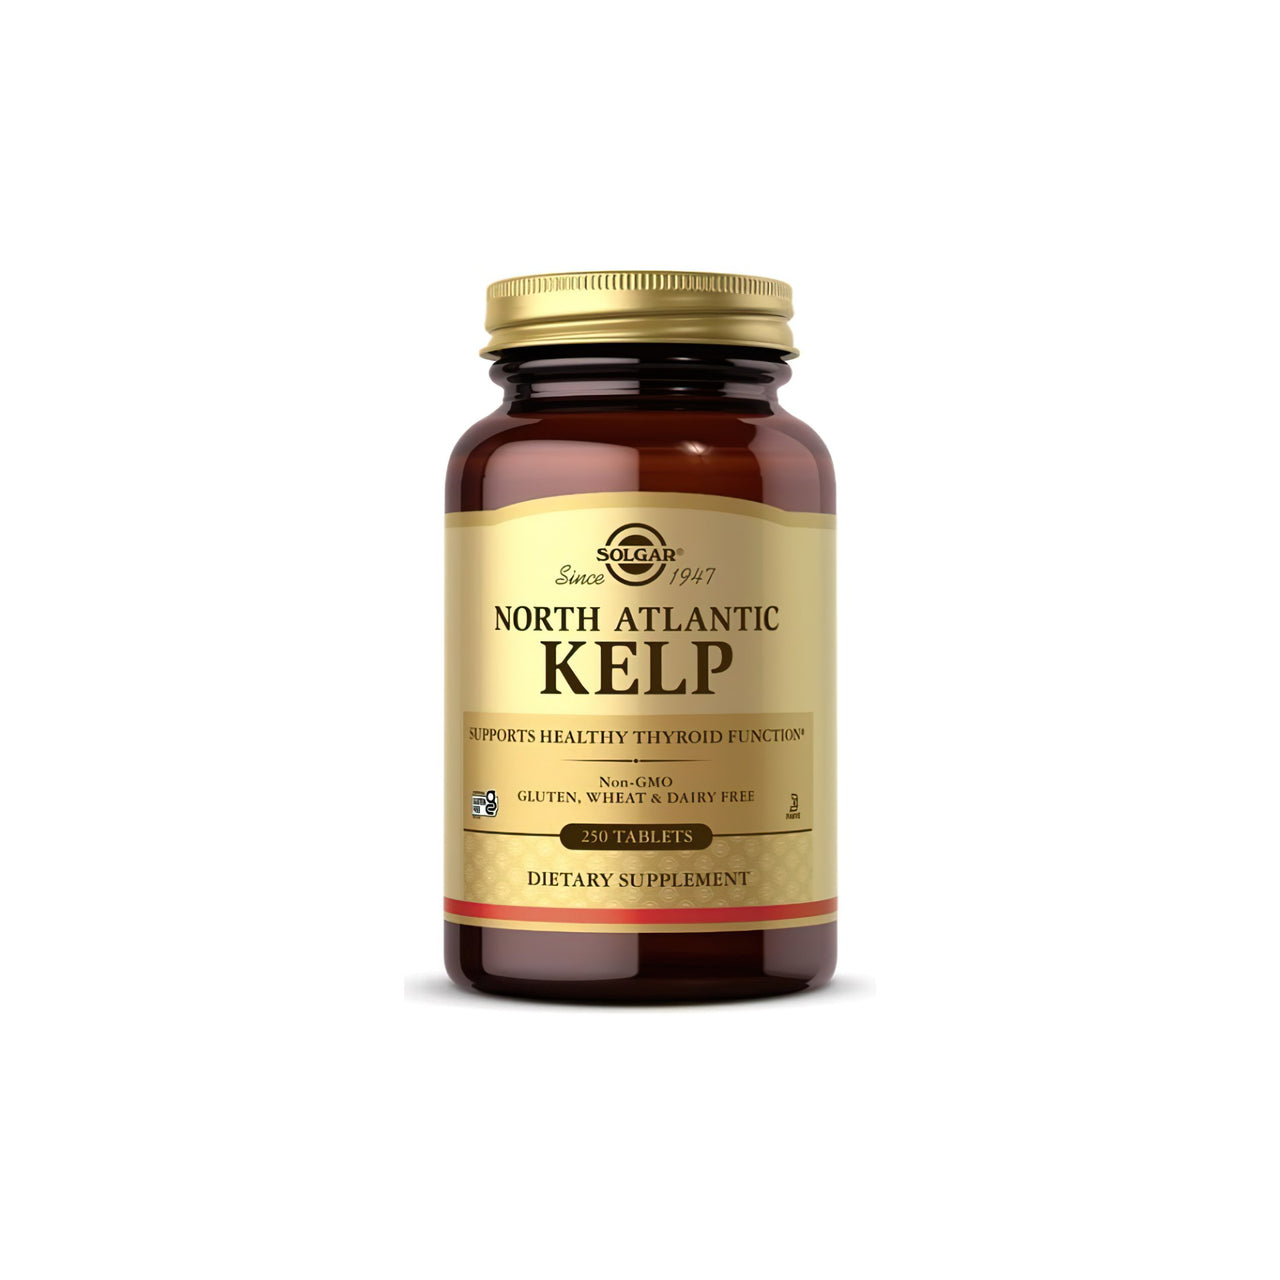 Une bouteille de Solgar North Atlantic Kelp 200 mcg 250 Comprimés, riche en iode pour un fonctionnement optimal de la glande thyroïde.